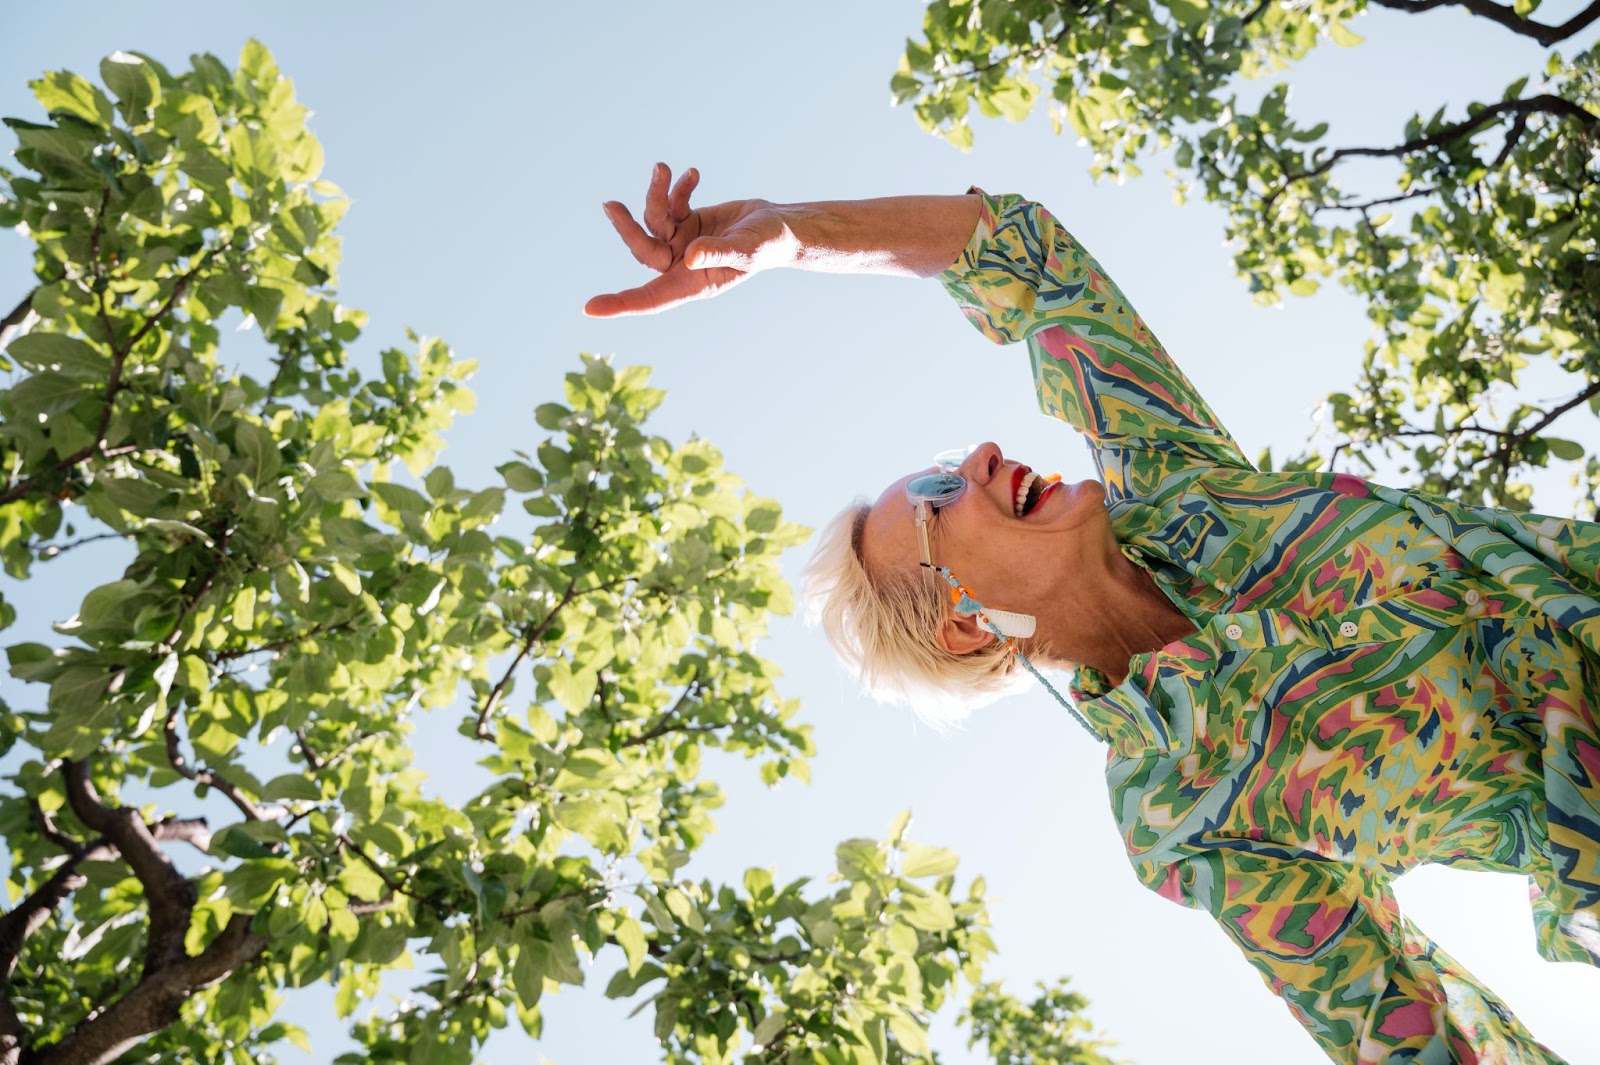 Plesom do radosti i kontakta – terapijska moć plesa za demenciju